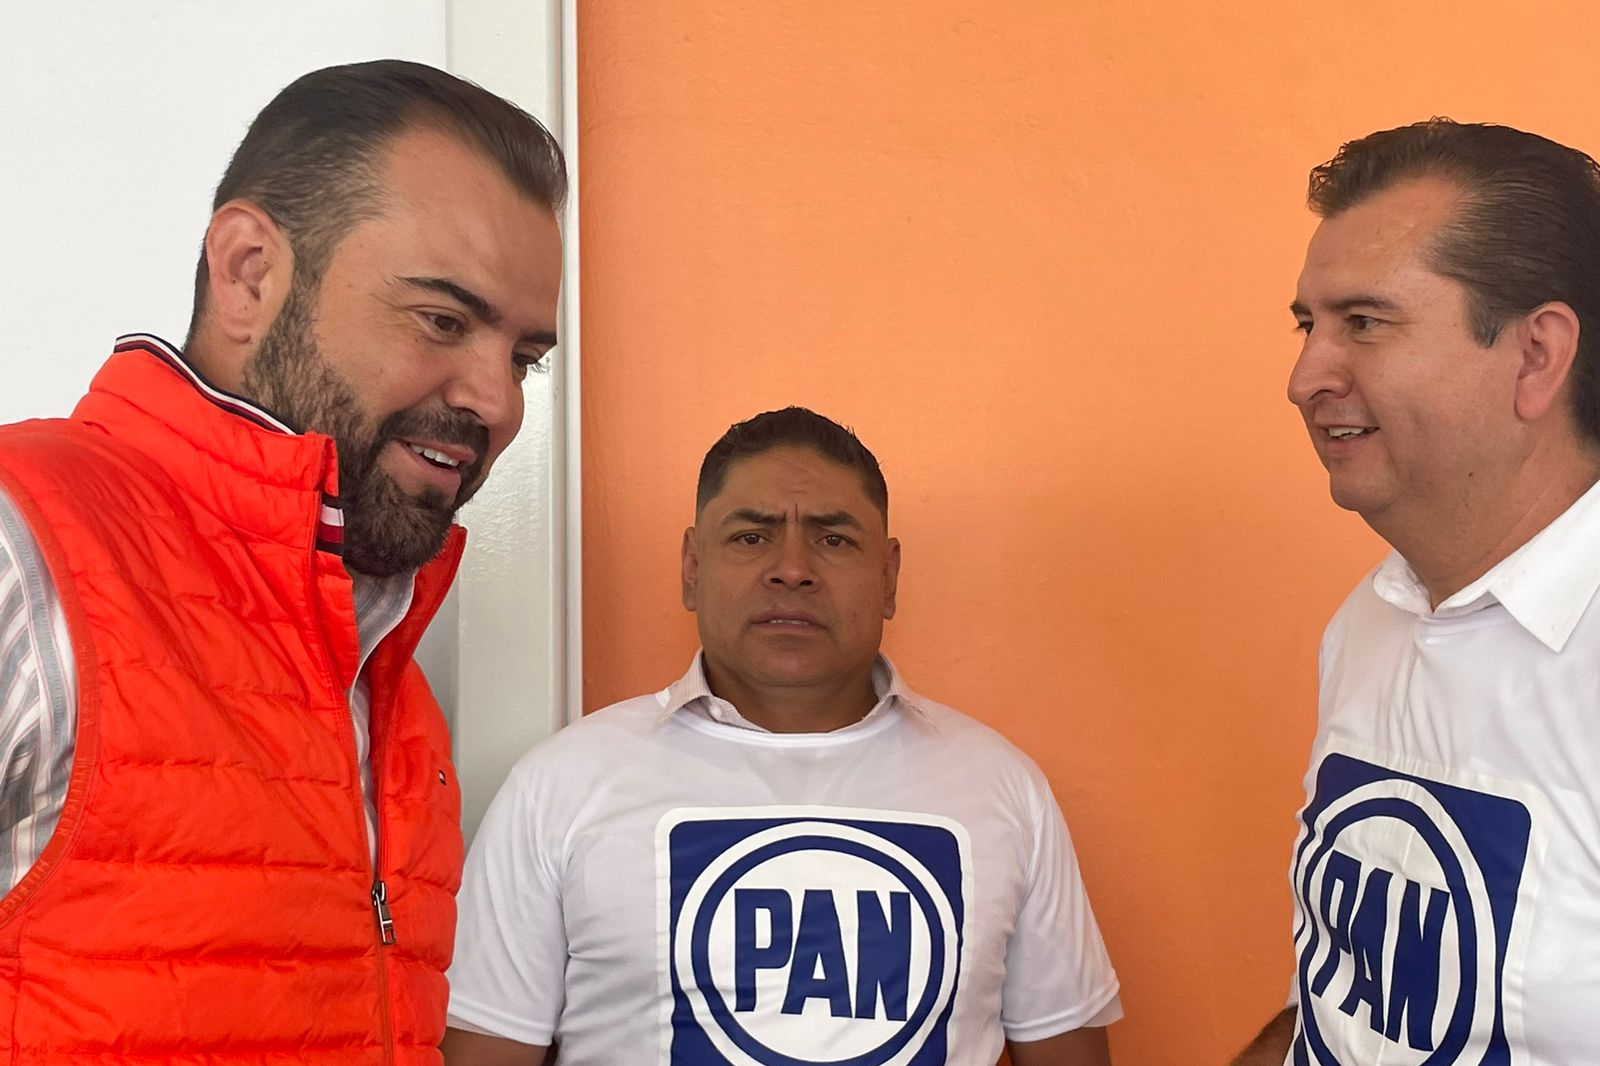 Llegan más a campaña de Gerardo Quirino, ahora el presidente del PAN en Tlajomulco